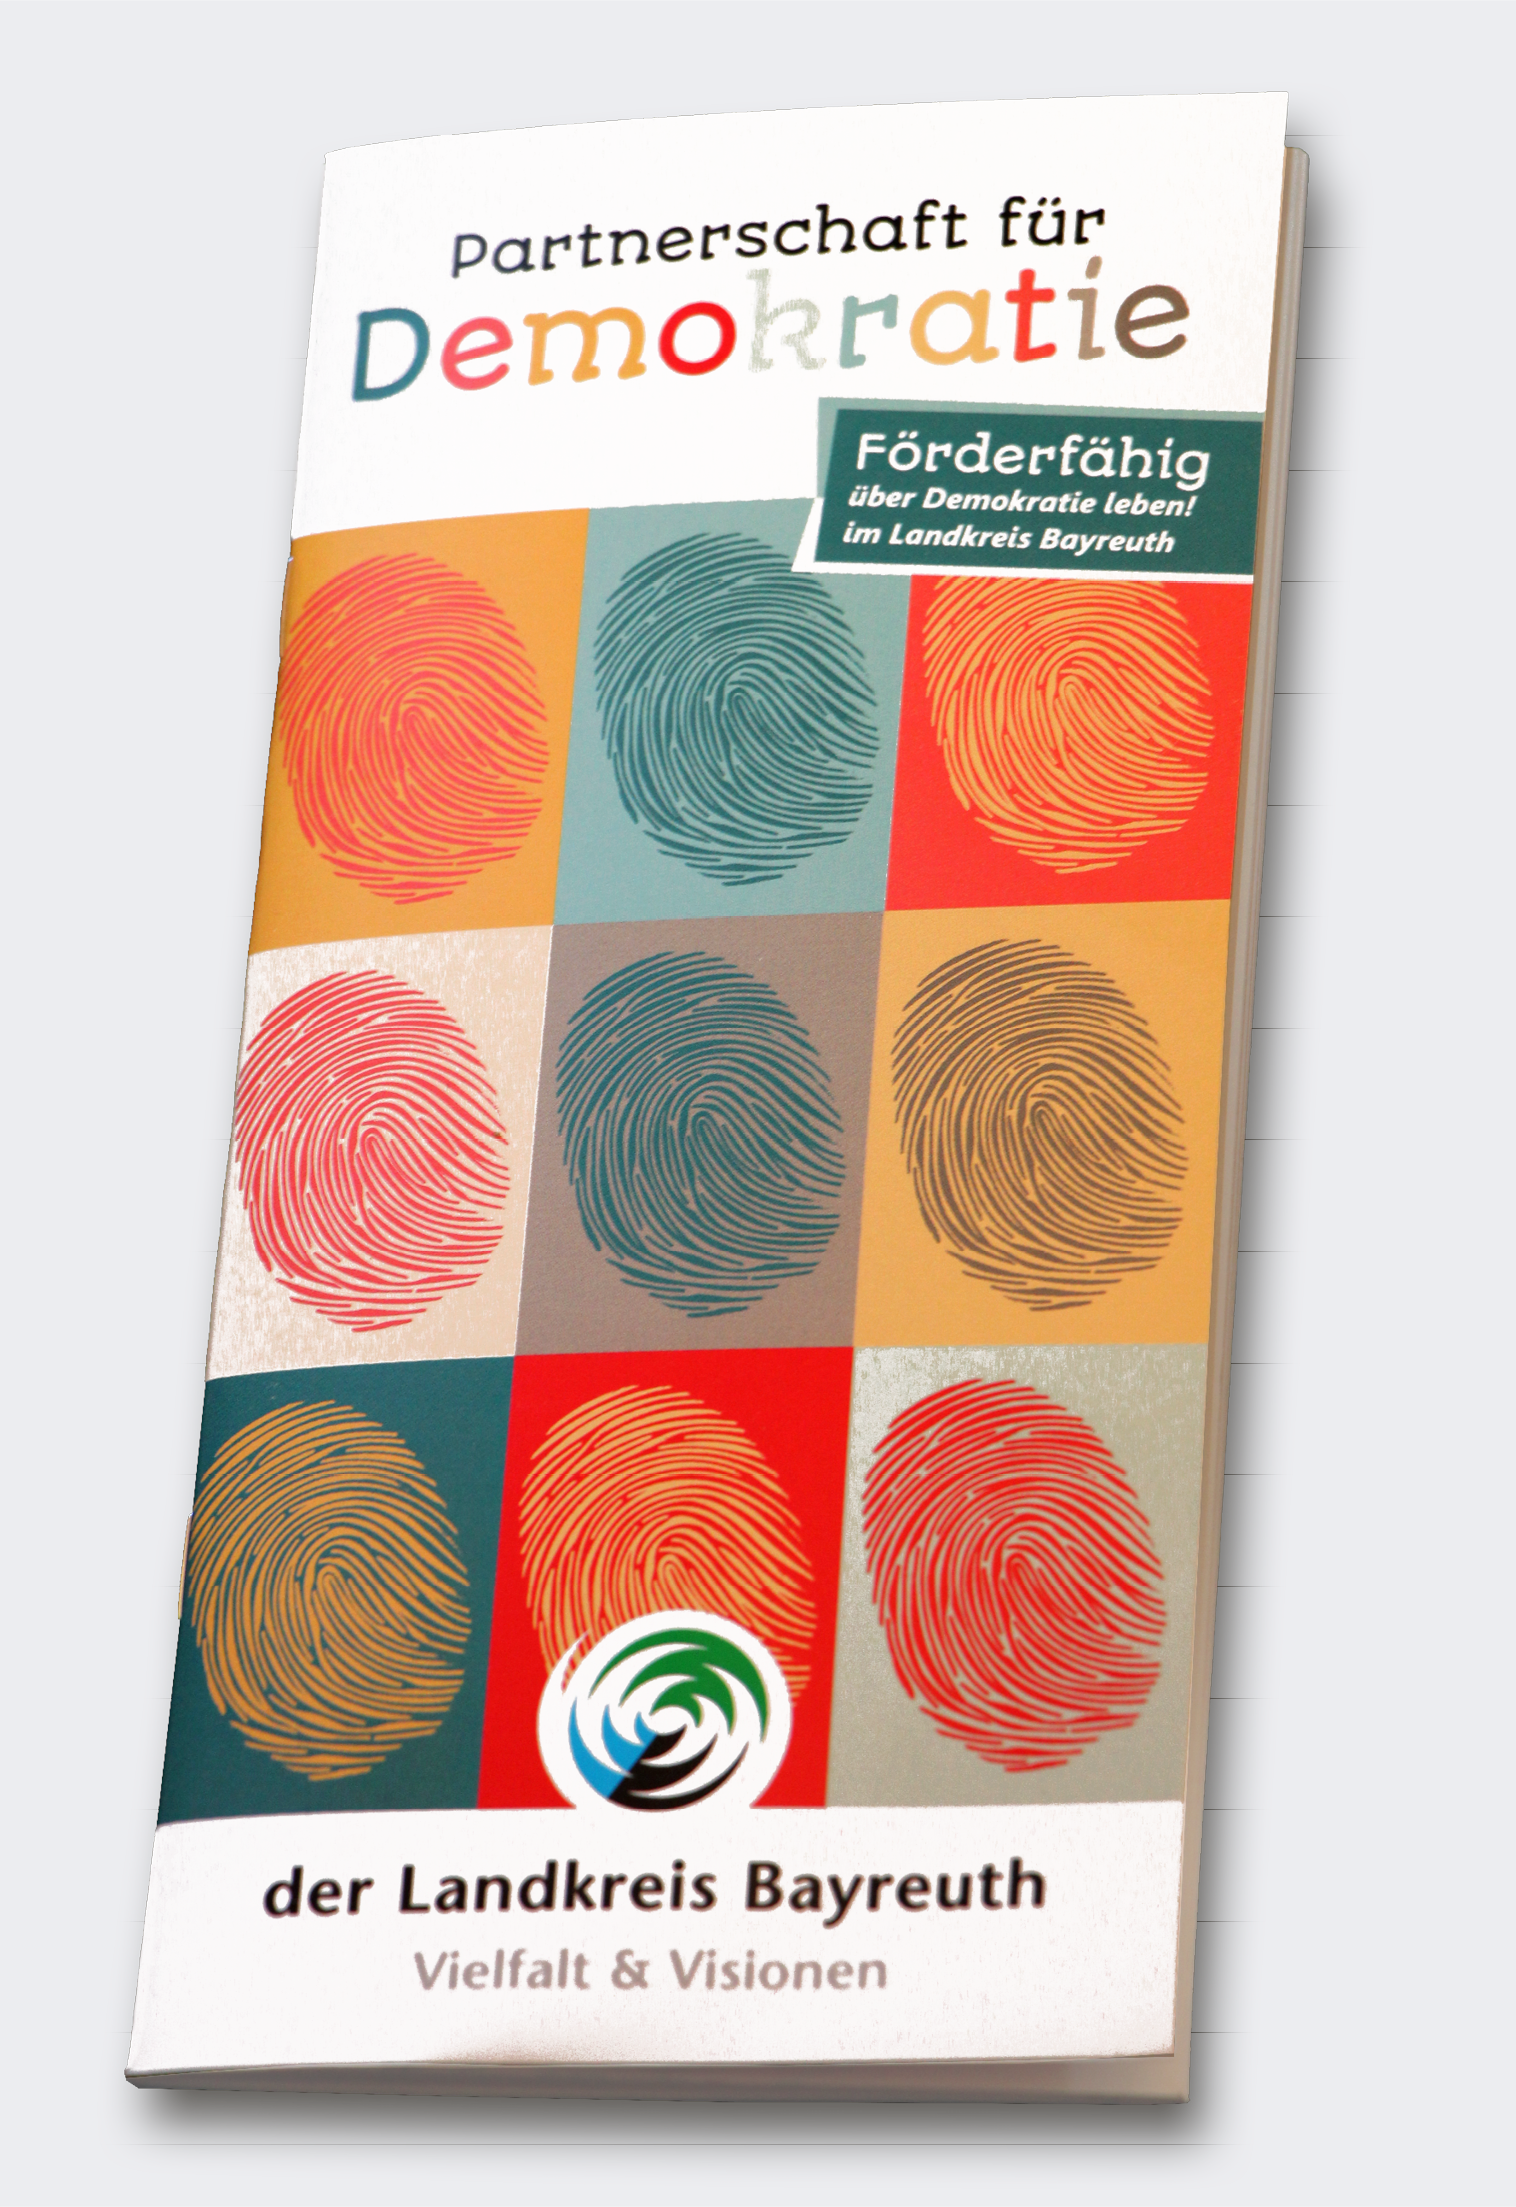 Coveransicht der Broschüre "Partnerschaft für Demokratie" für den Landkreis Bayreuth